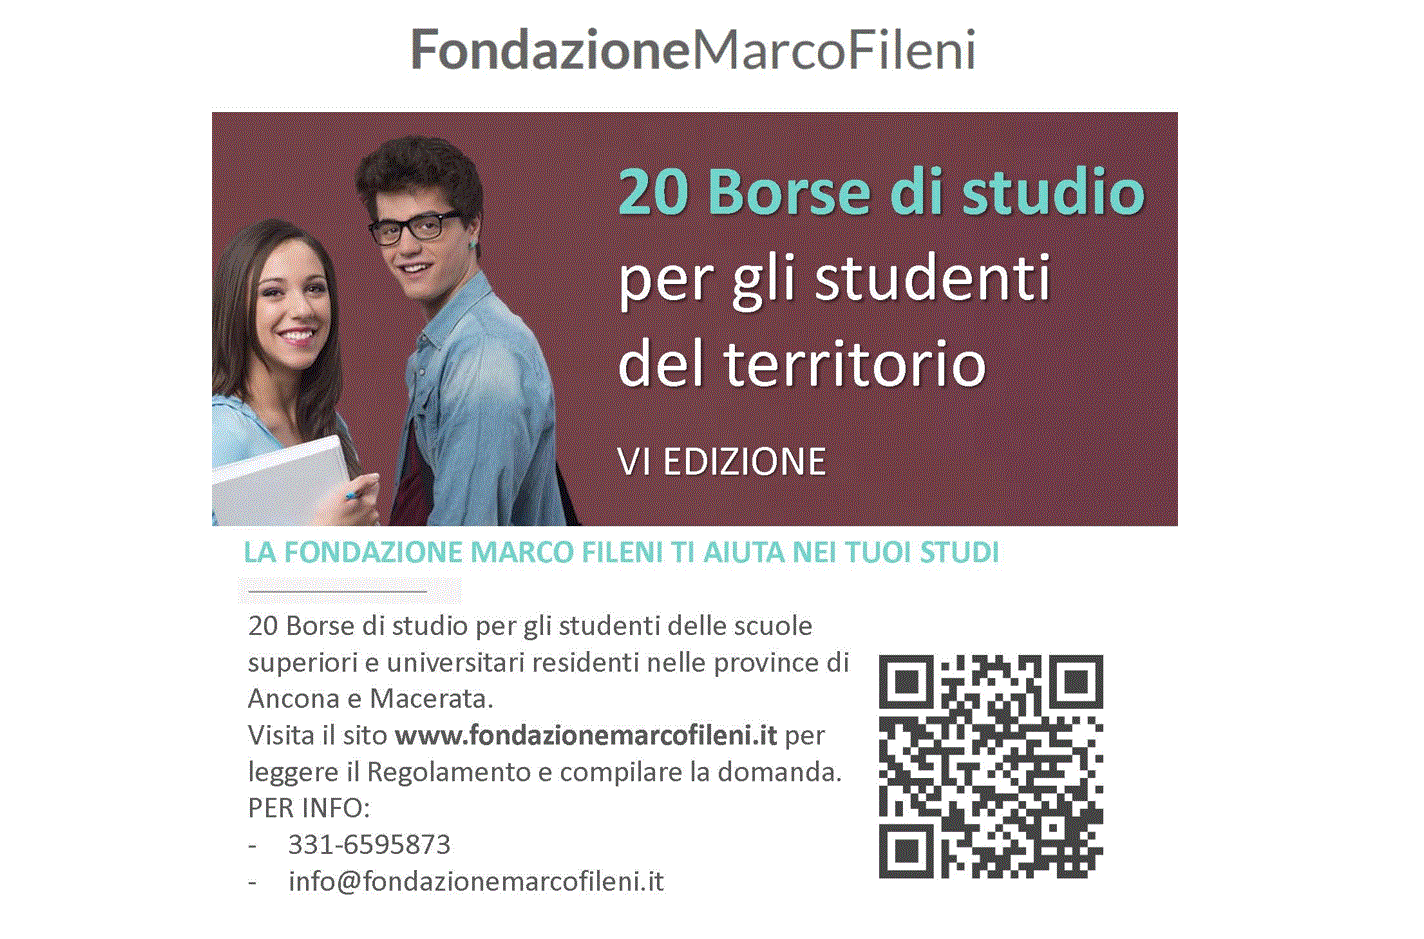 26 gennaio 2022 - Fondazione Marco Fileni – Borse di studio progetto “Crediamo nei giovani” - Liceo Statale G. Leopardi Macerata